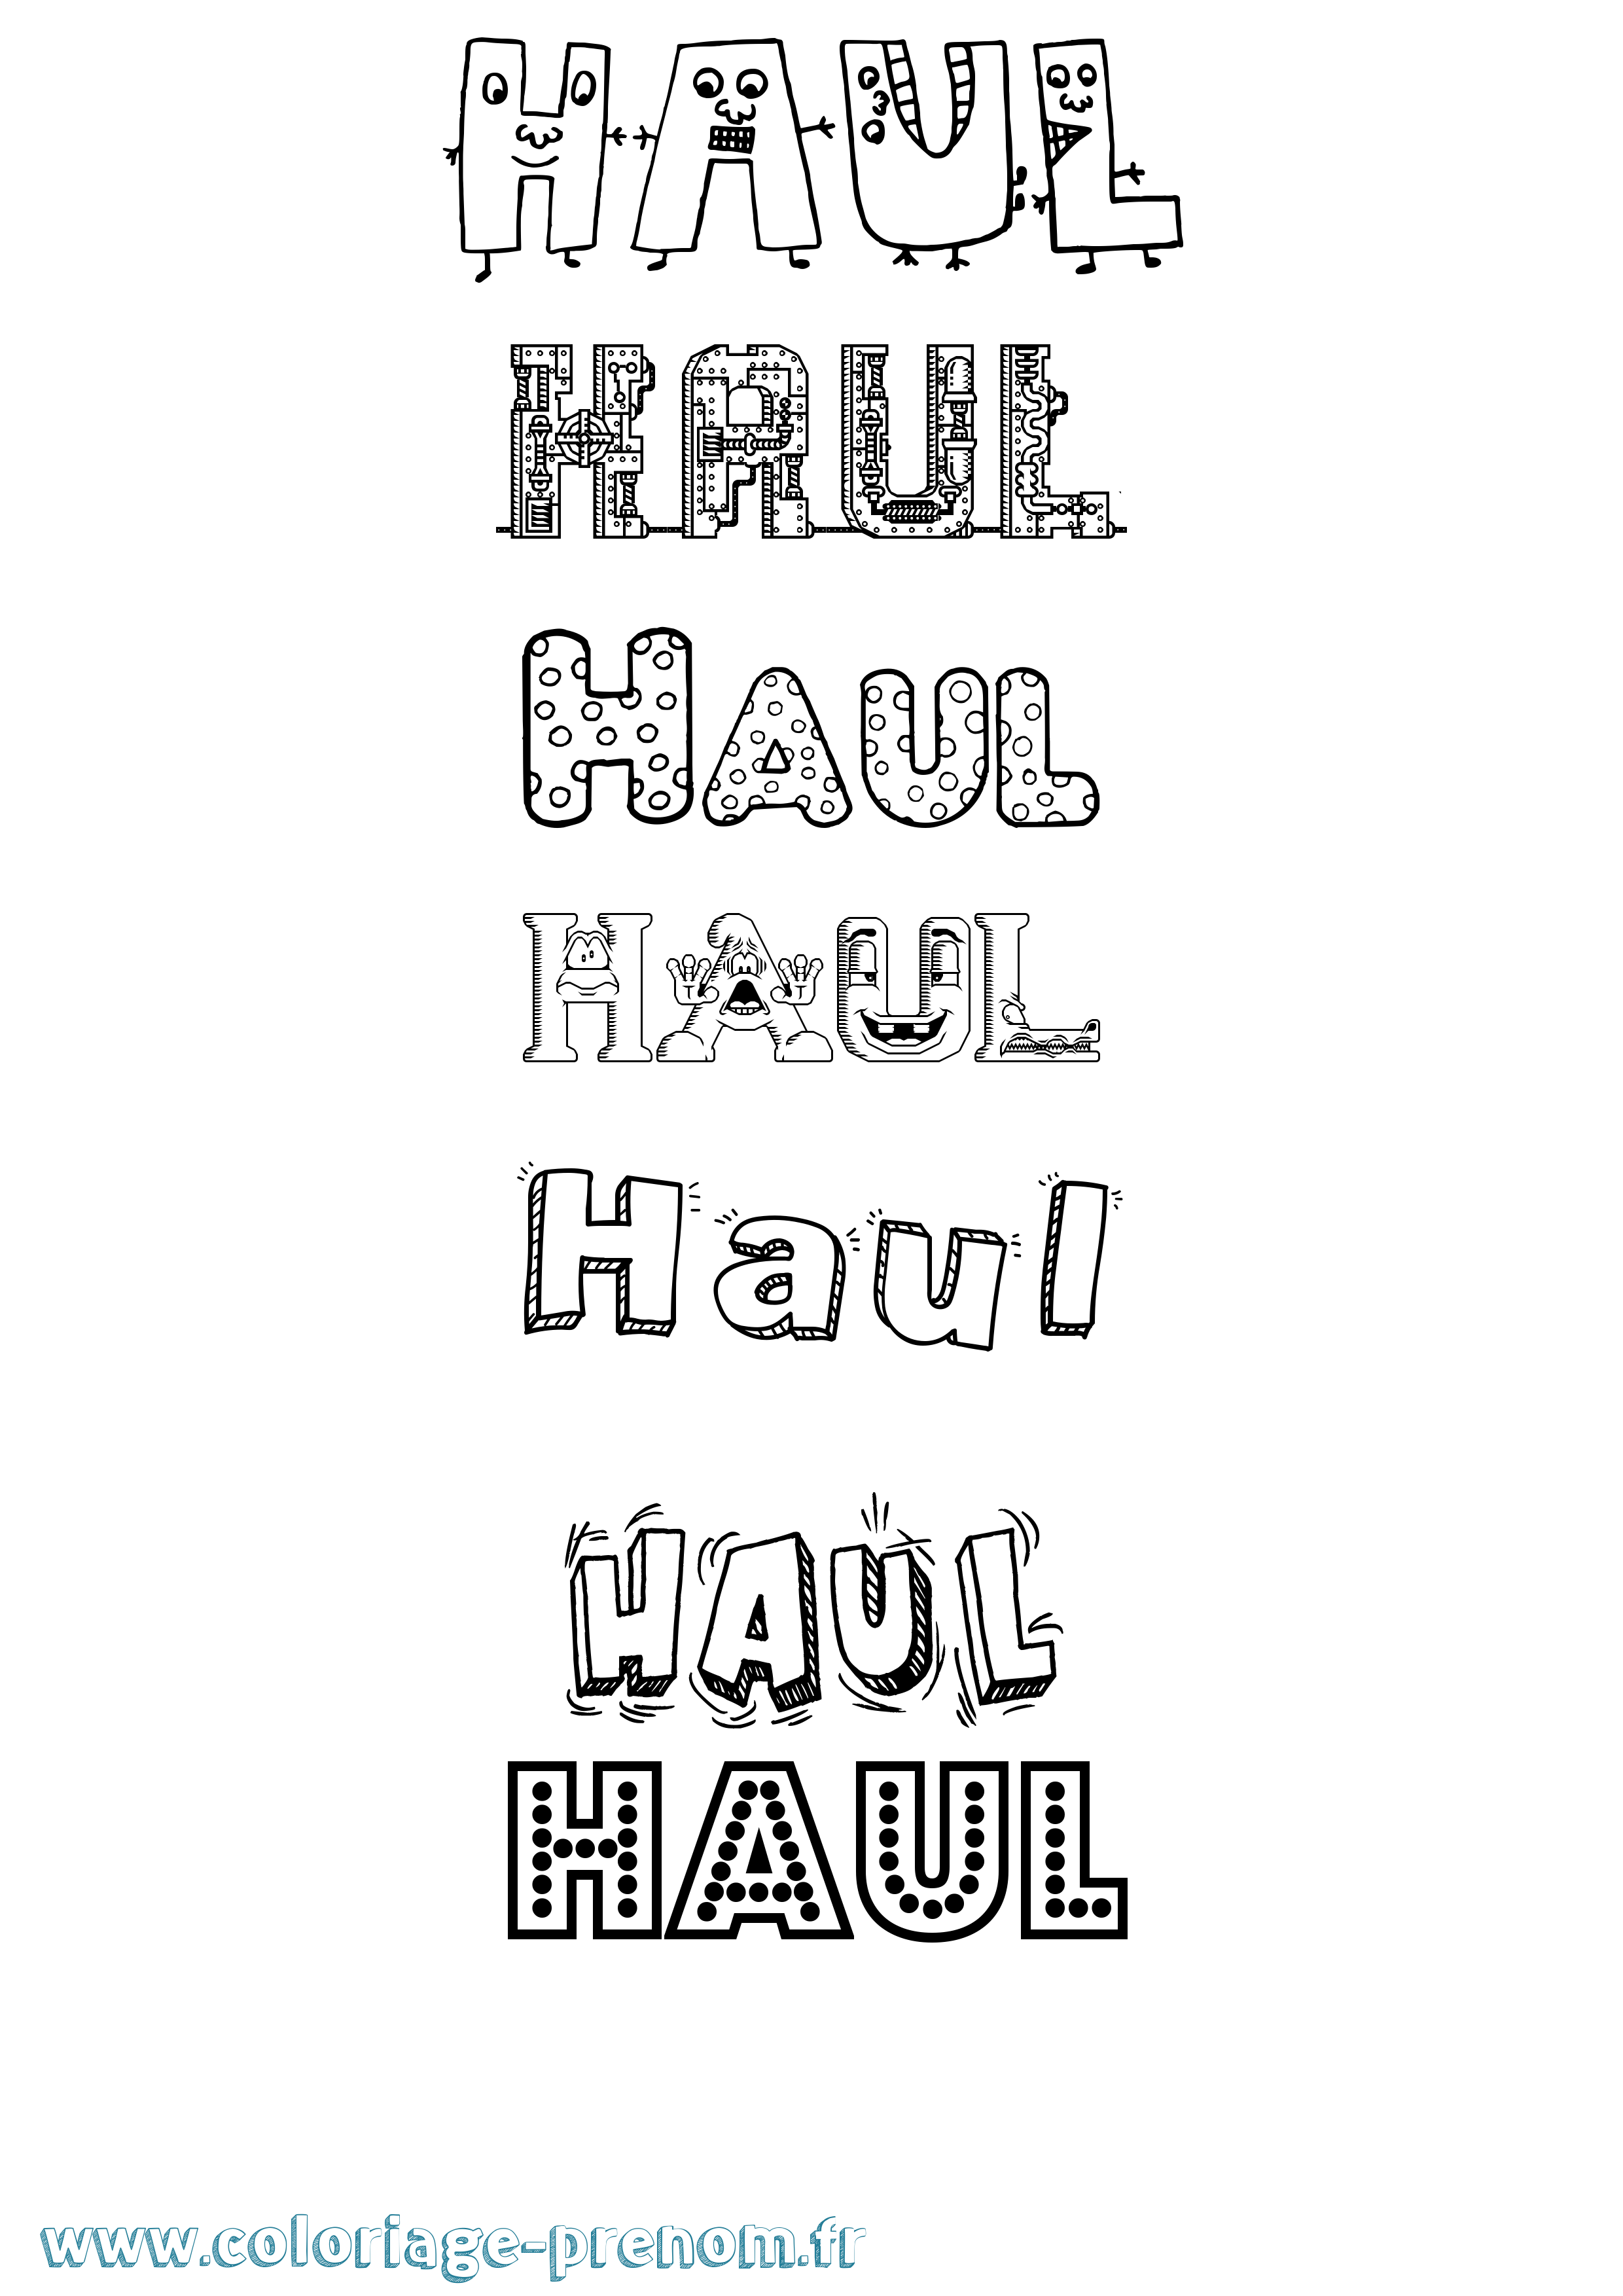 Coloriage prénom Haul Fun